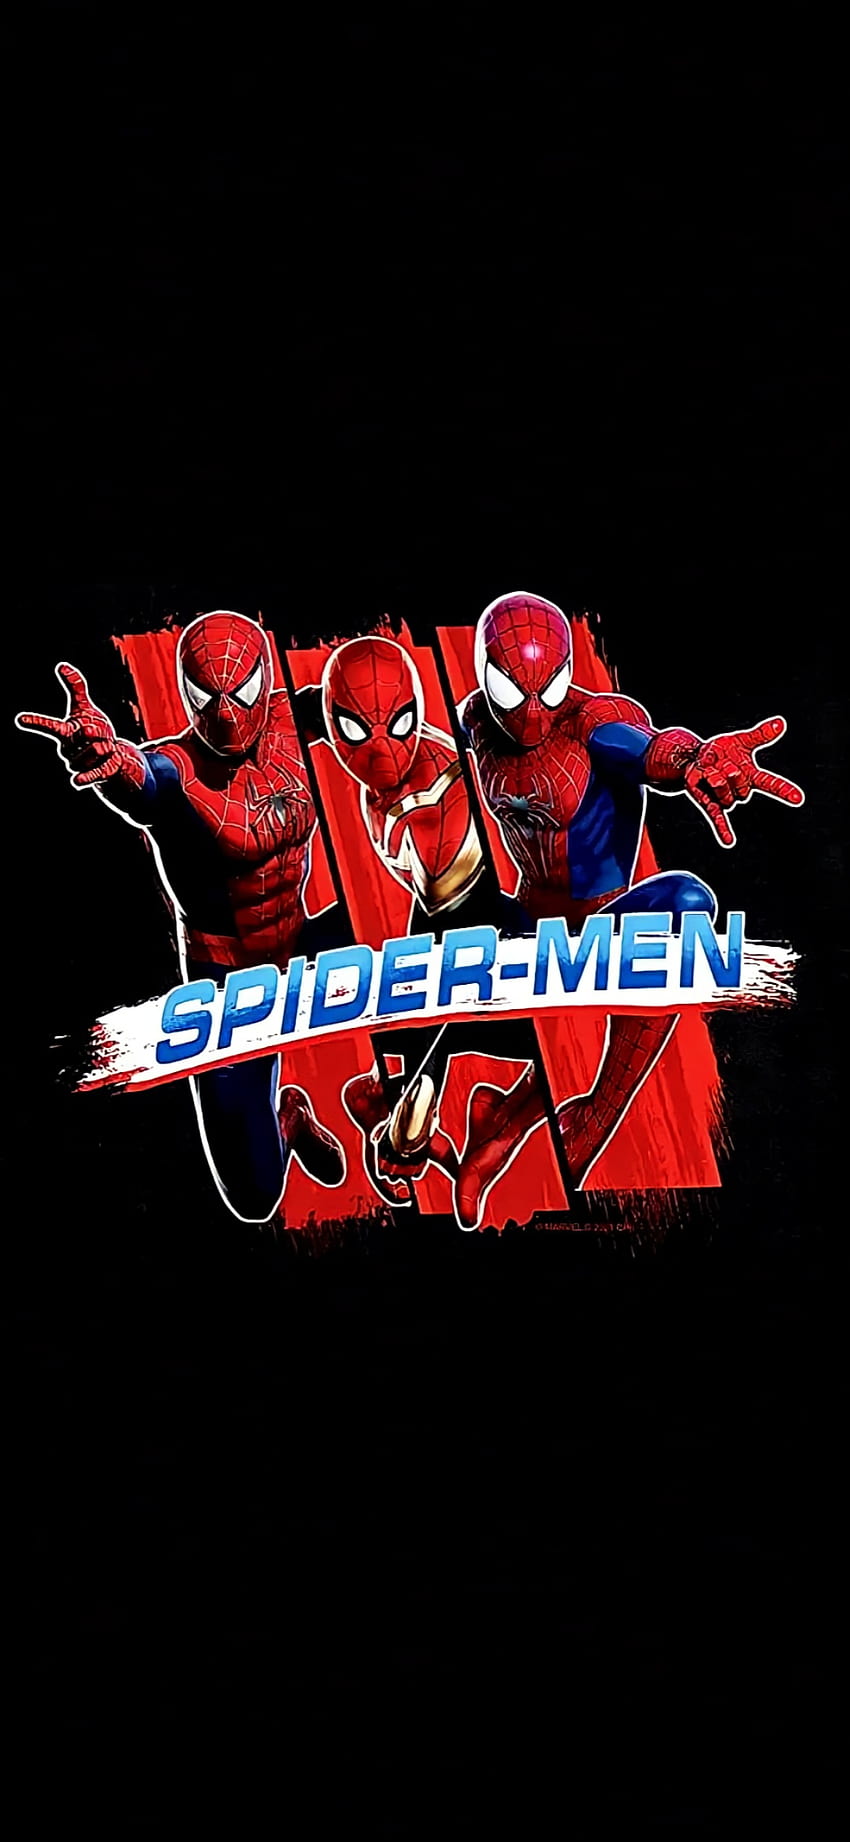 Spider-Men NWH, Spider-Man, Tobey Maguire, Pas de retour à la maison, Spider man, Tom Holland, Andrew Garfield, Spidermen, Spiderverse, Marvel, Spiderman Fond d'écran de téléphone HD